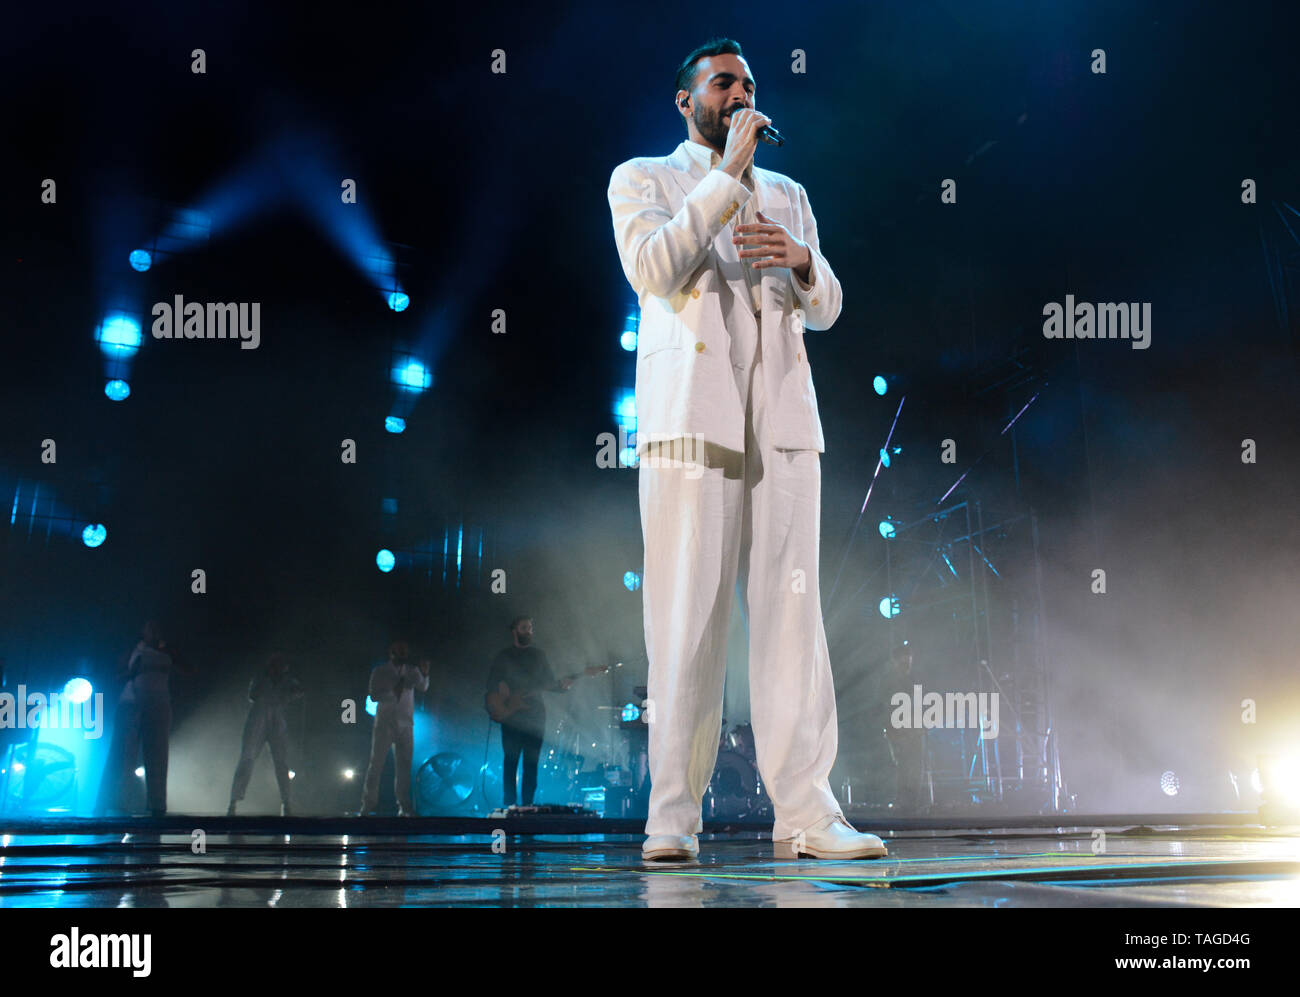 Verona, Italia. 24 de mayo de 2019. El famoso cantautor italiano Marco Mengoni se presenta en vivo con su Atlantico Tour 2019 en Arena de Verona, Italia. Foto de stock